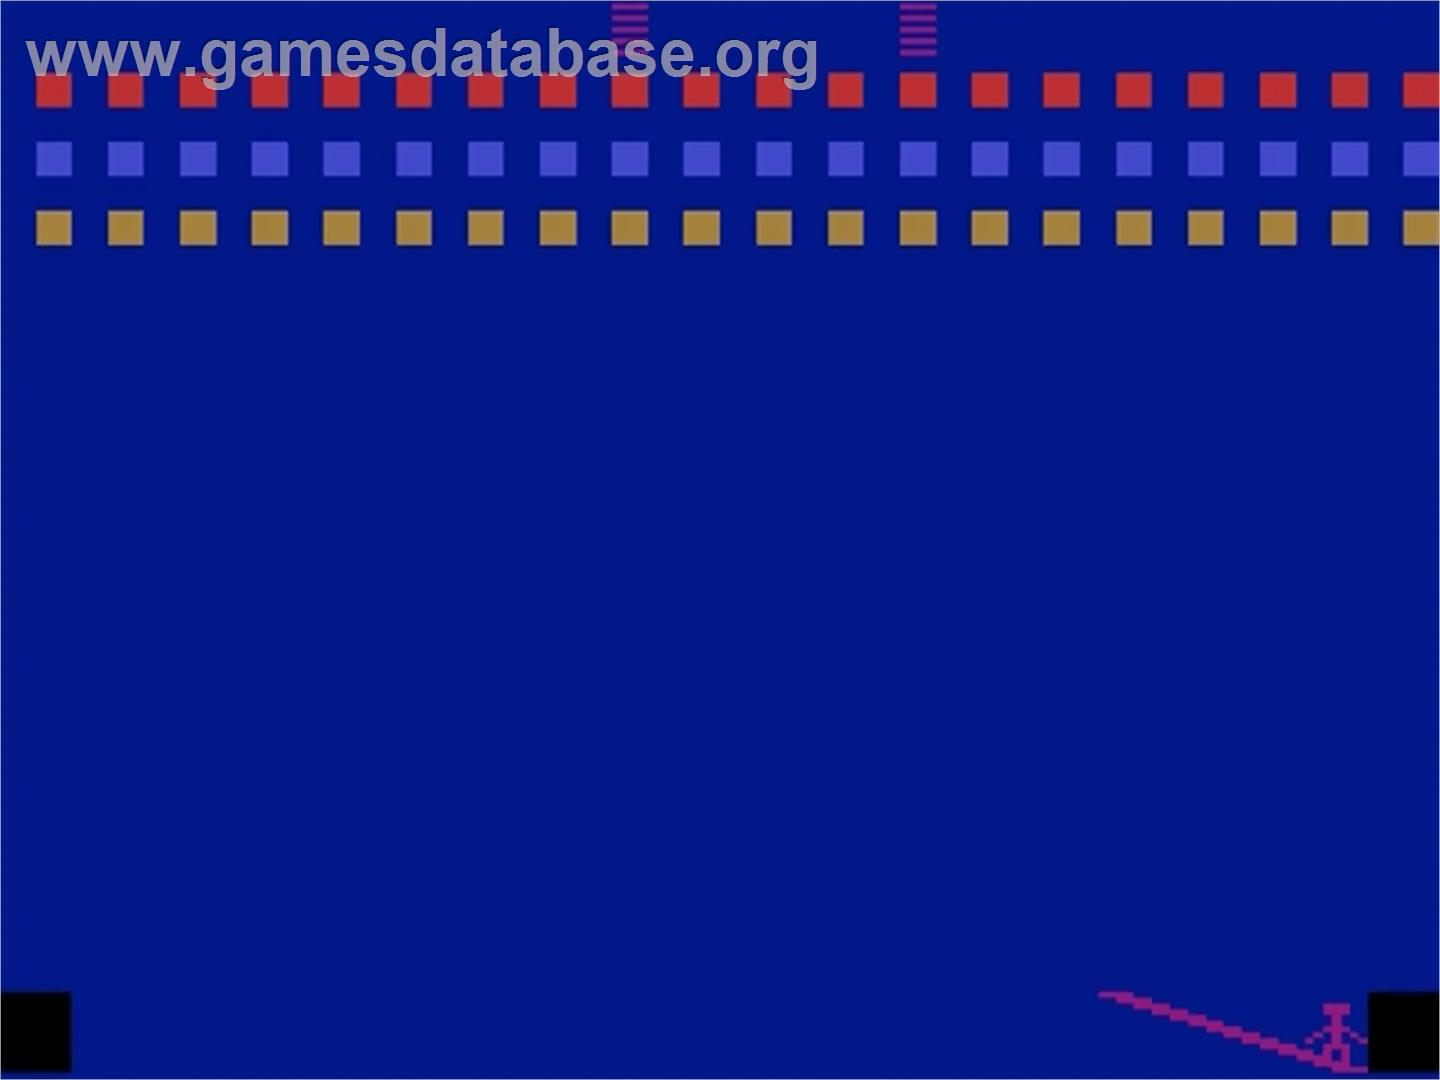 Circus Atari - Atari 2600 - Artwork - Title Screen